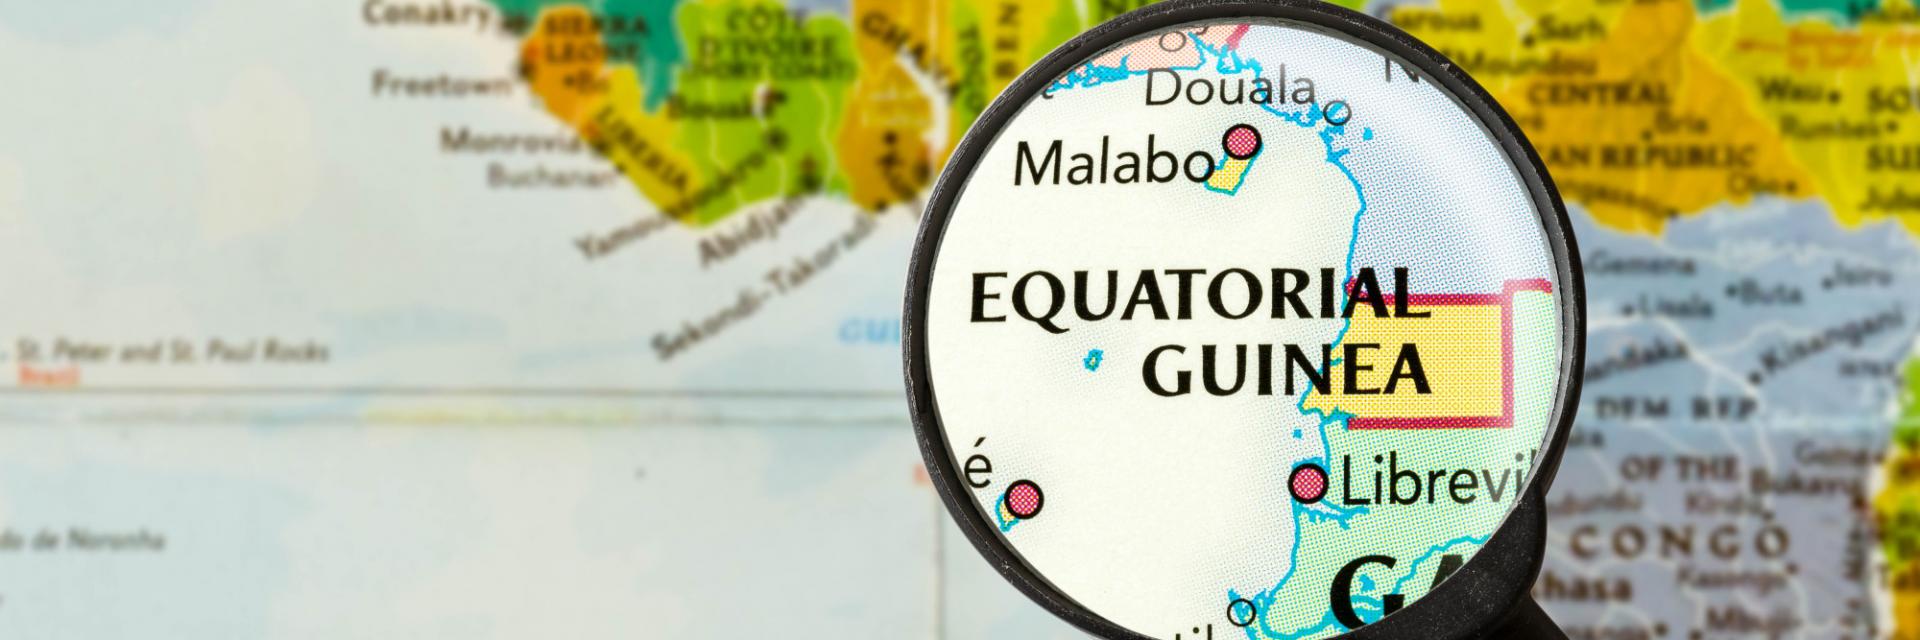 L’Appui de la CEA à la Guinée équatoriale pour l’élaboration d’une stratégie nationale de la ZLECAf